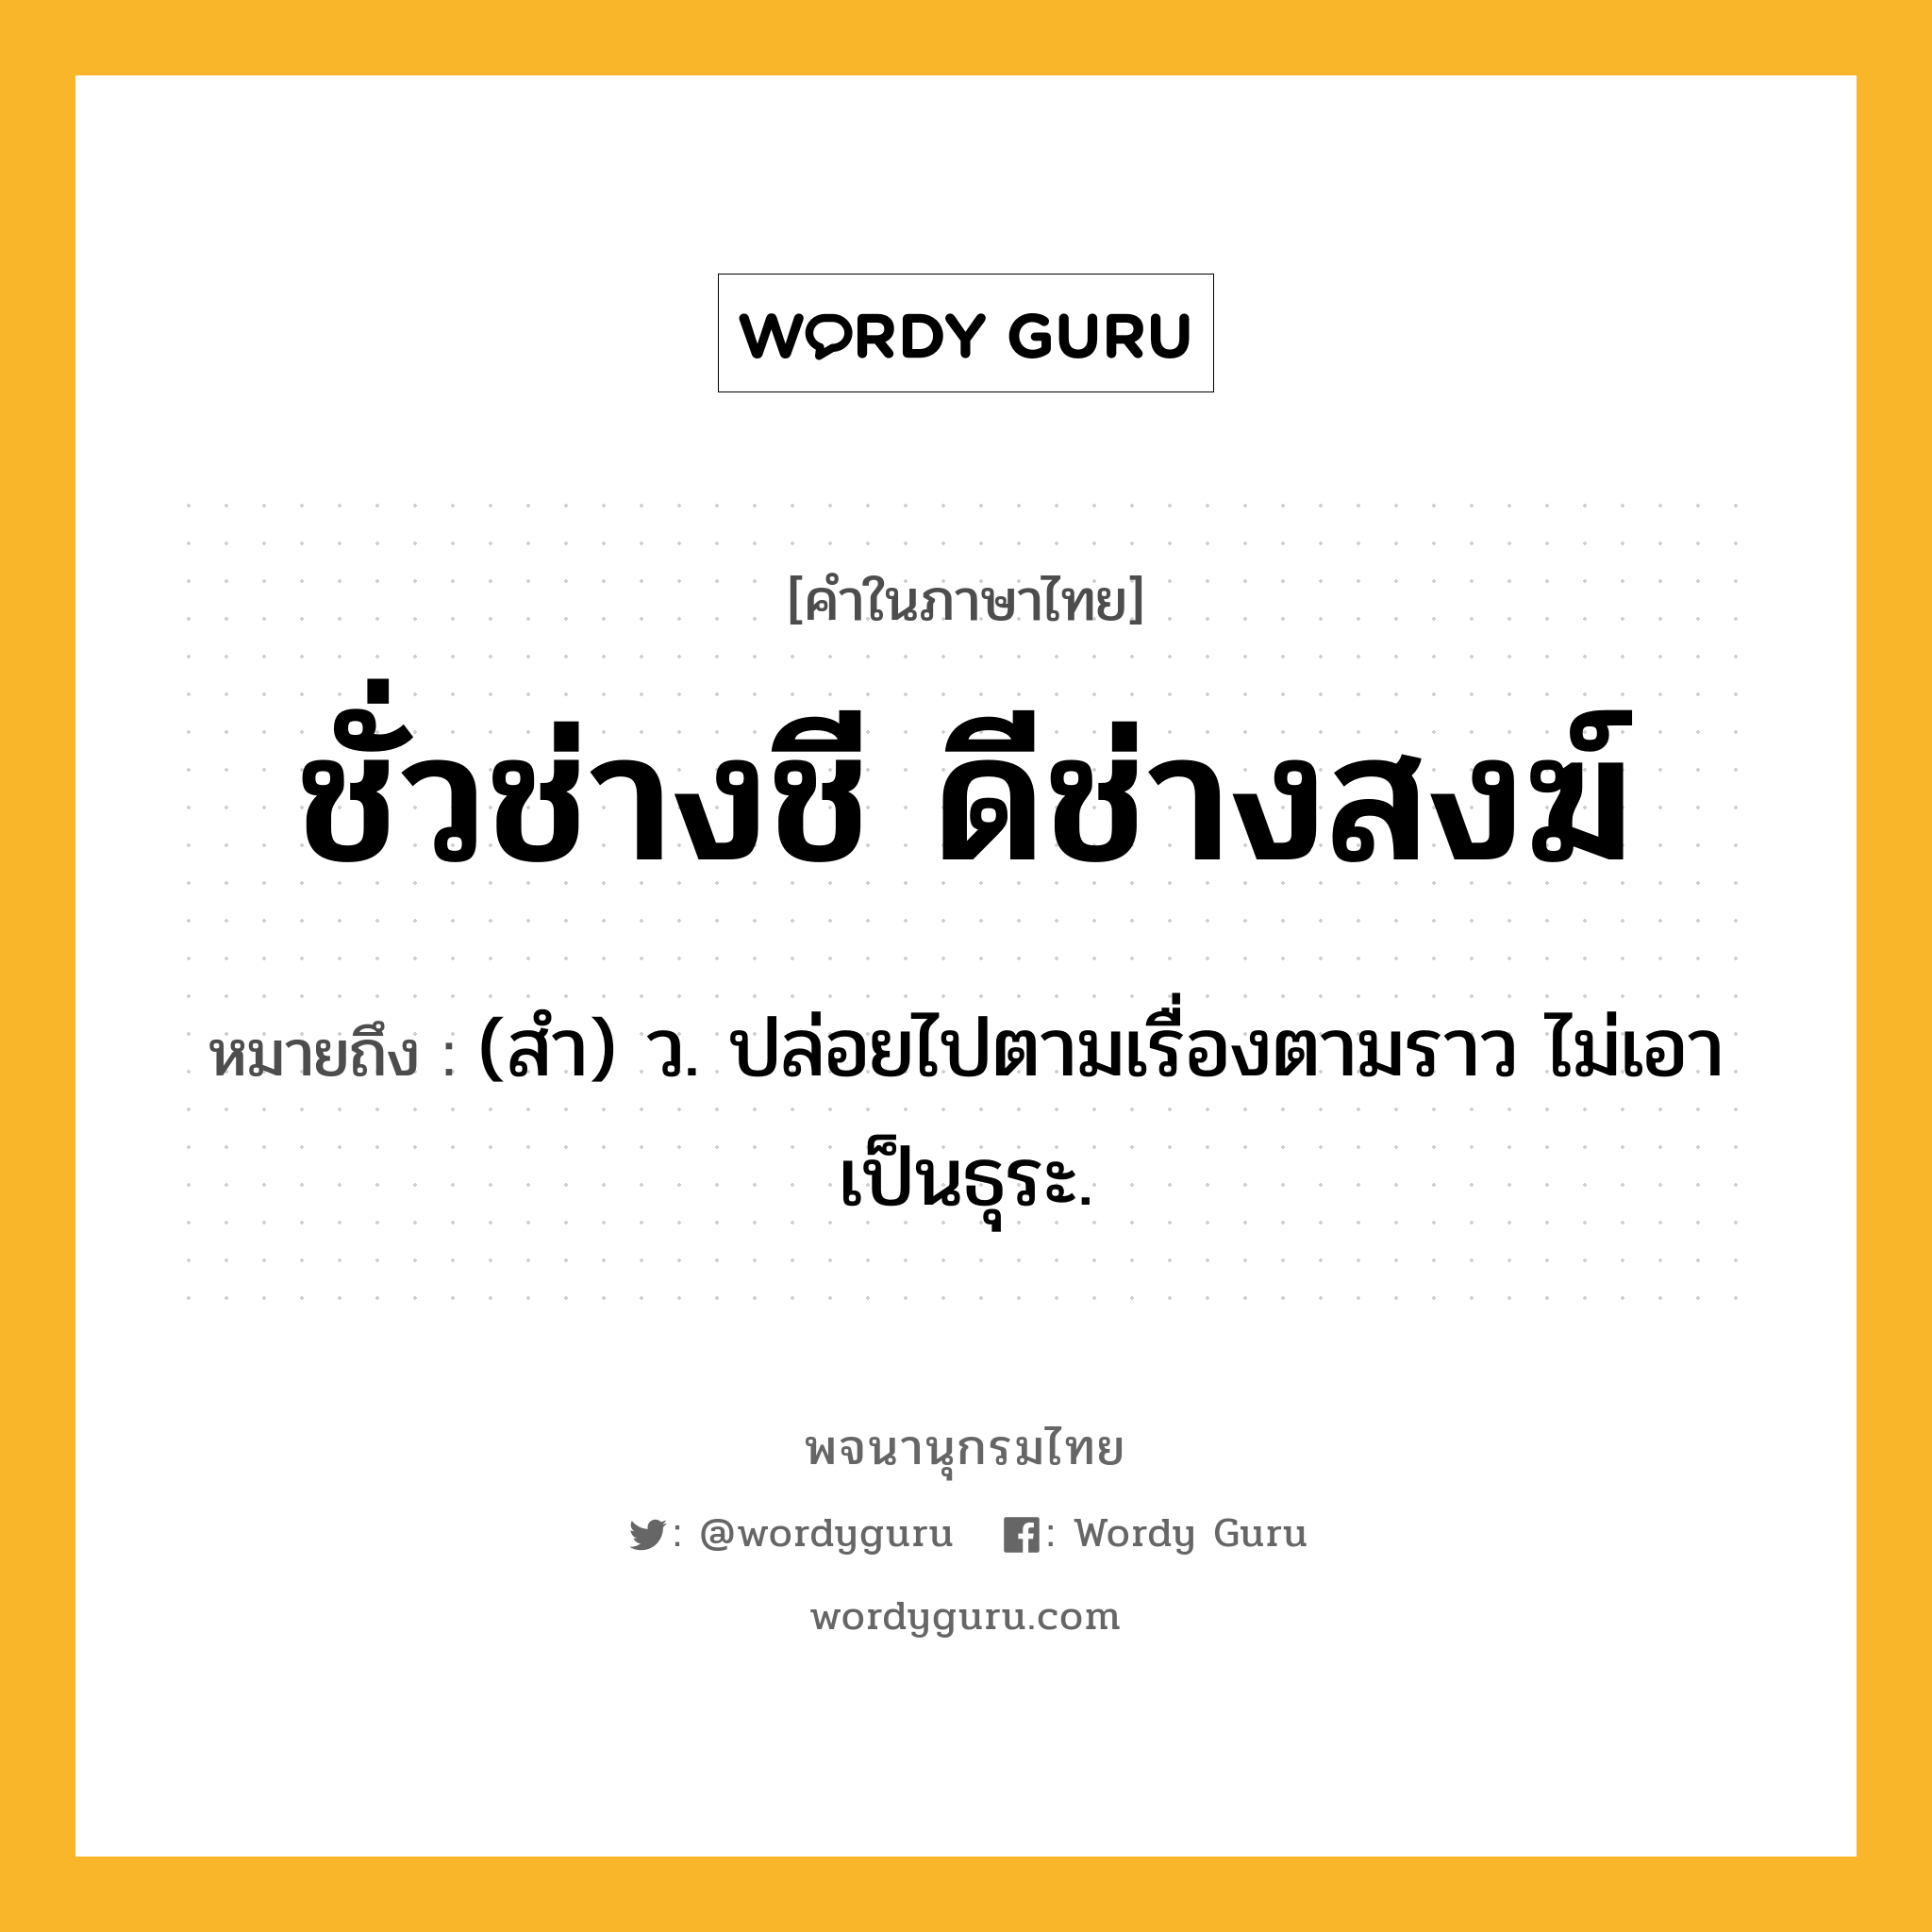 ชั่วช่างชี ดีช่างสงฆ์ ความหมาย หมายถึงอะไร?, คำในภาษาไทย ชั่วช่างชี ดีช่างสงฆ์ หมายถึง (สํา) ว. ปล่อยไปตามเรื่องตามราว ไม่เอาเป็นธุระ.